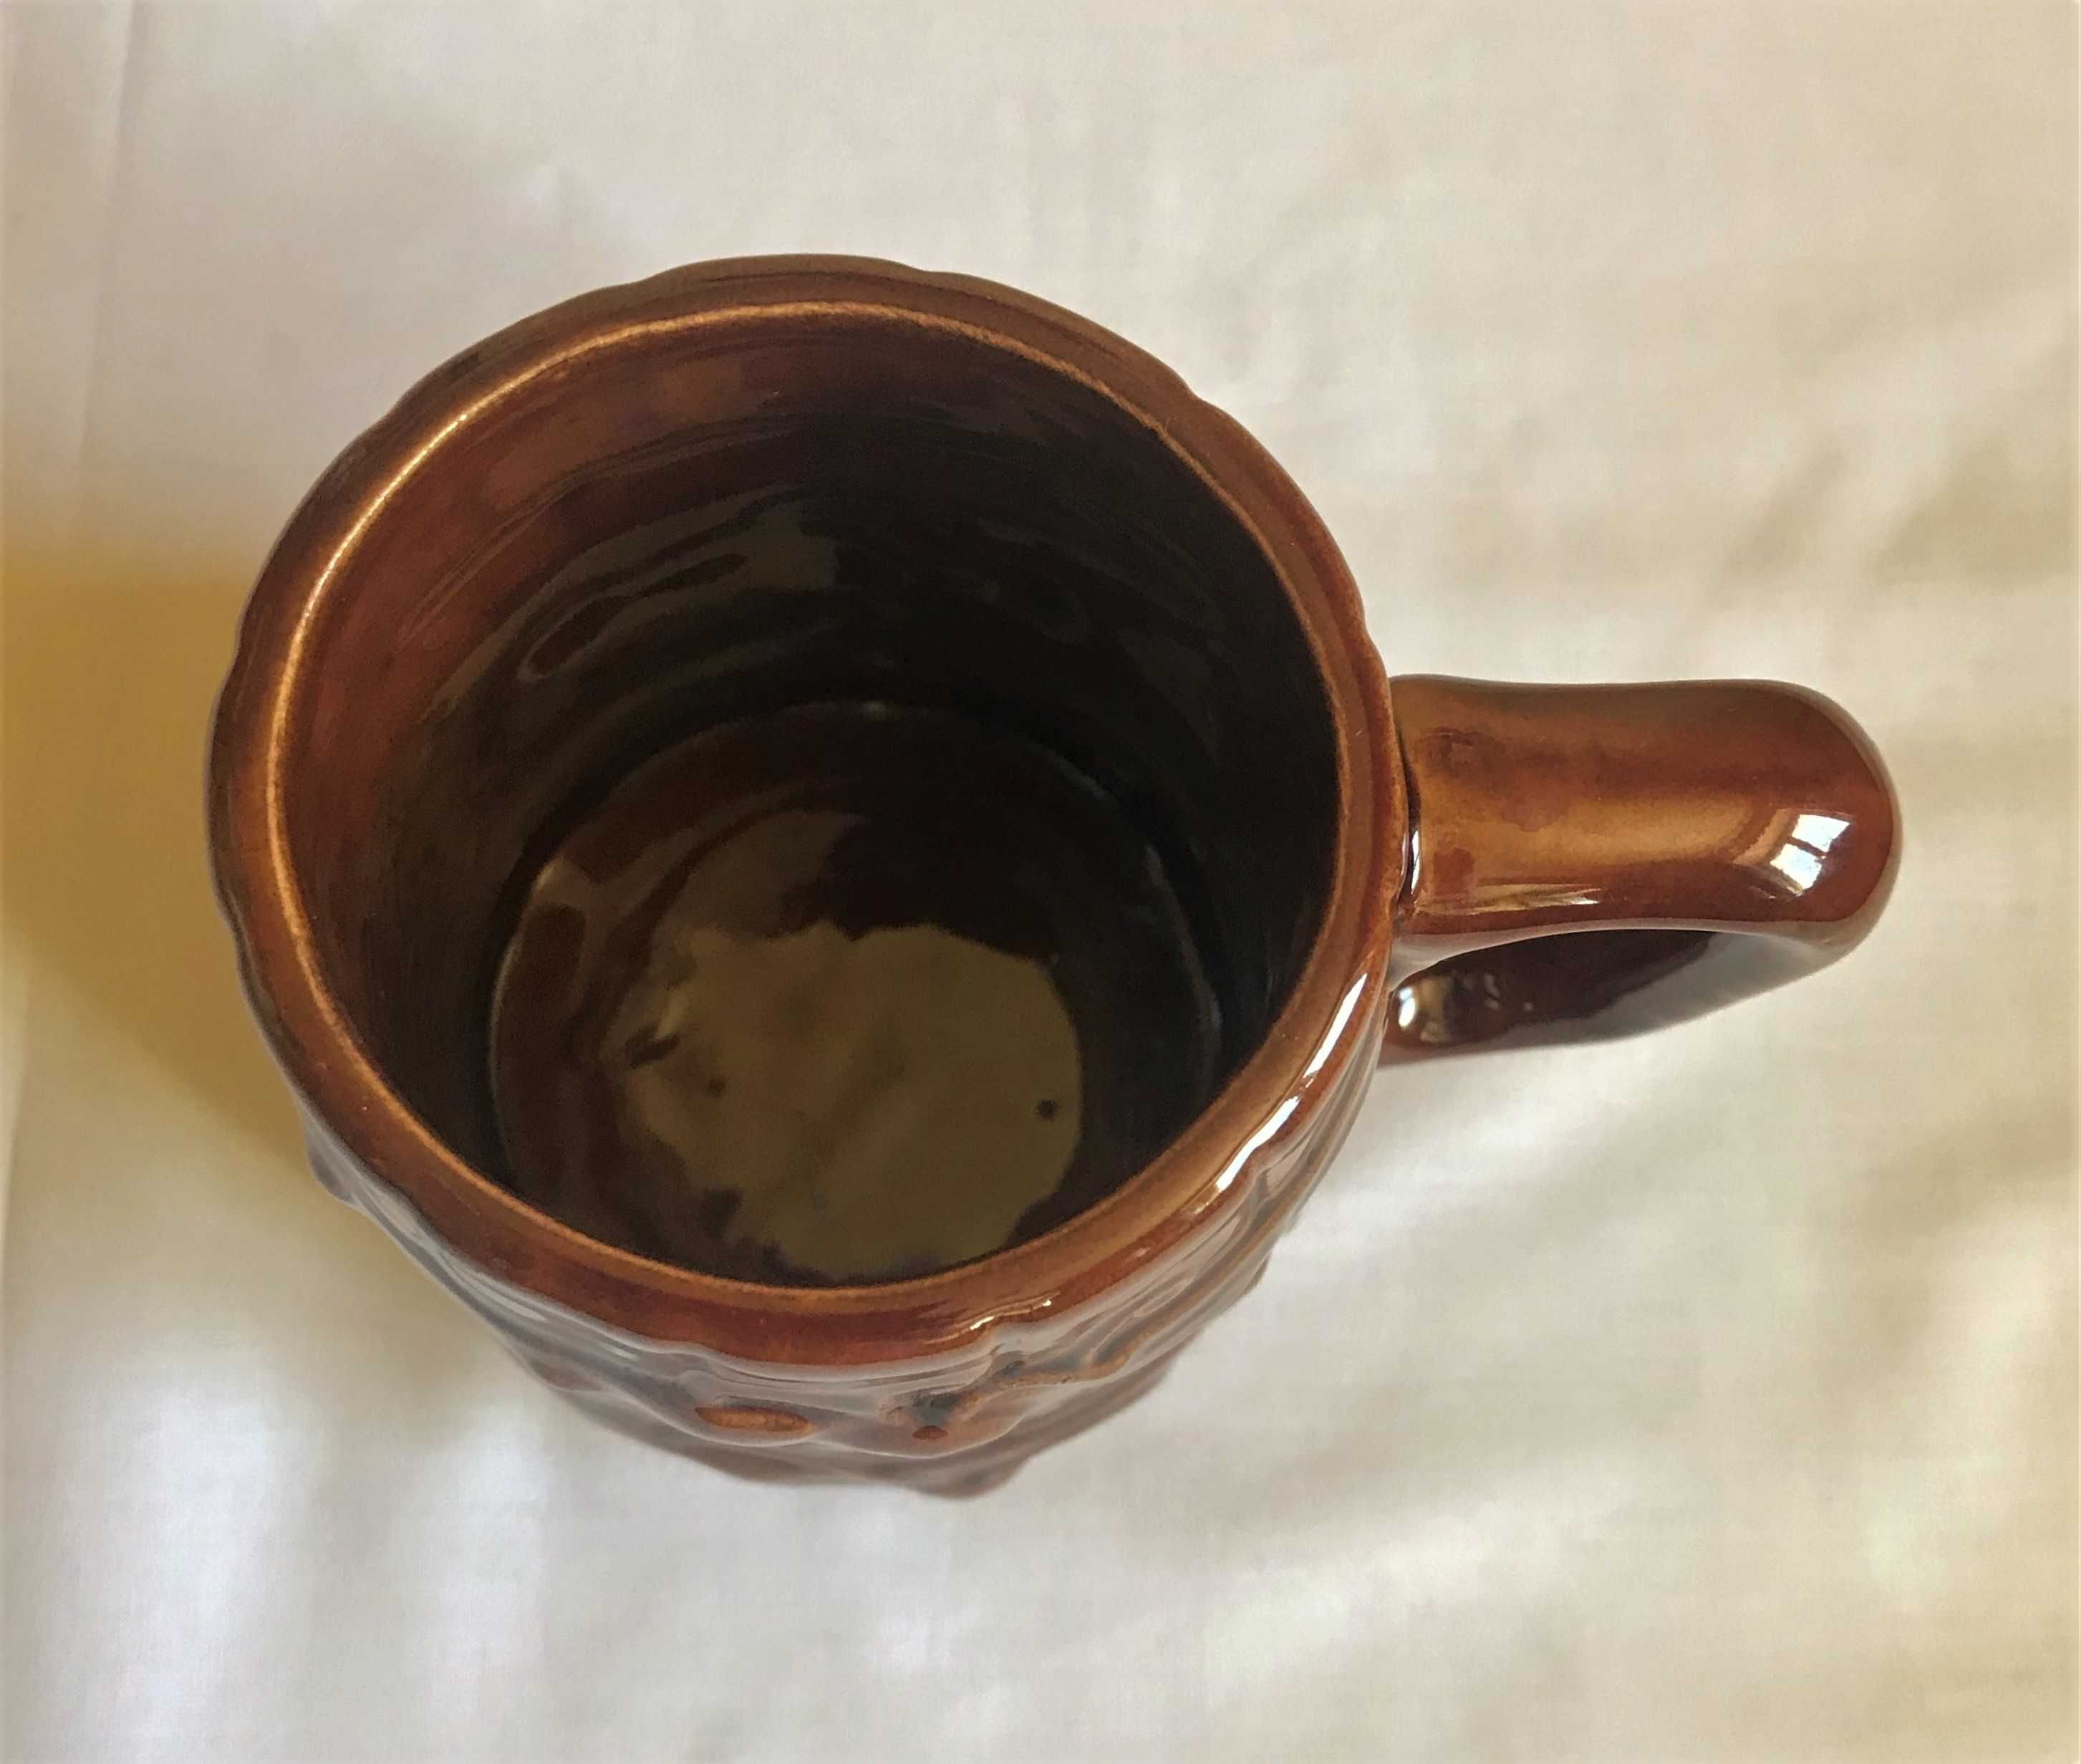 kufel prl herb lublina vintage ceramika piwo brązowy 0,5 l